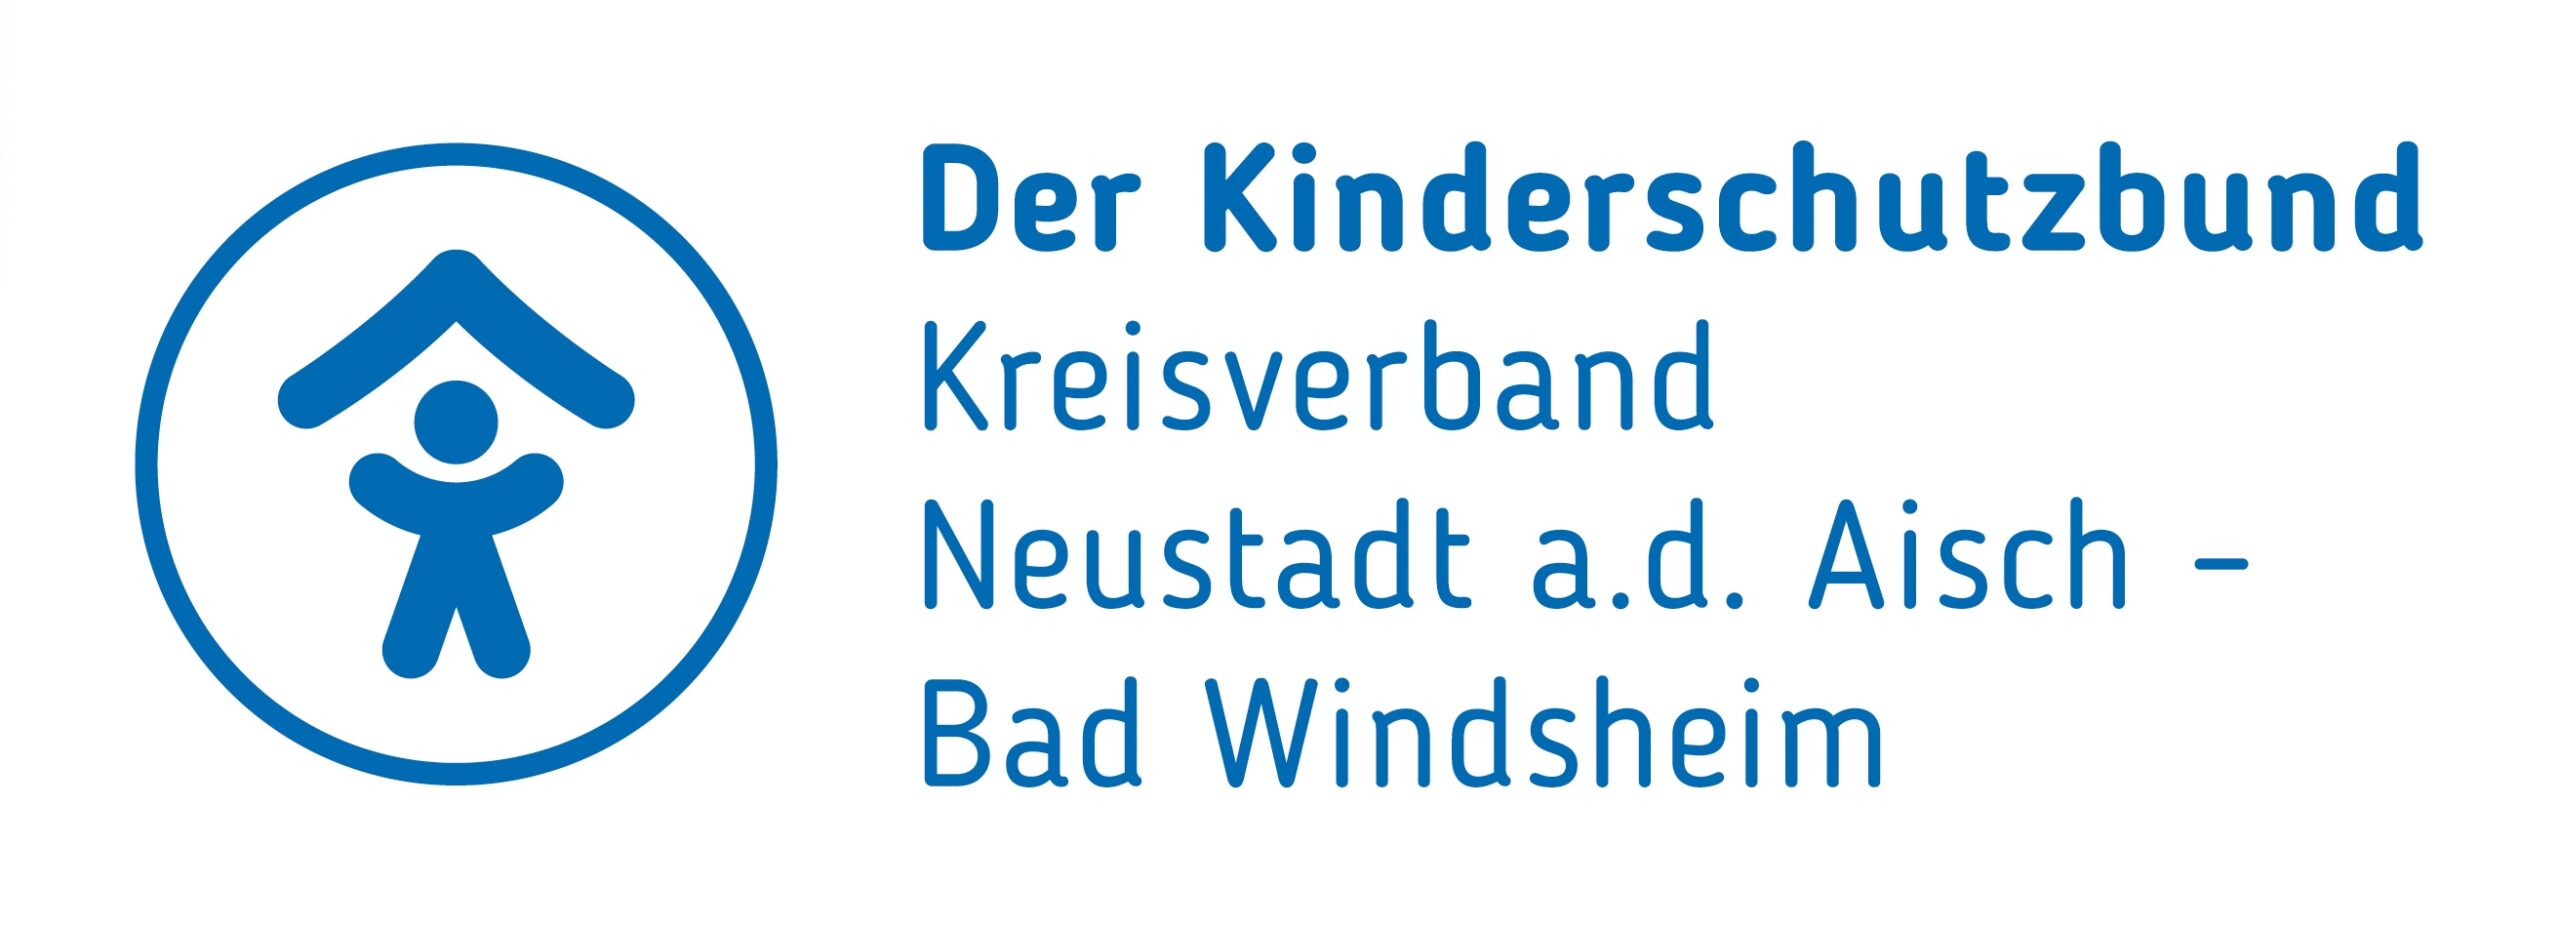 Logo Der Kinderschutzbund Kreisverband Neustadt a.d. Aisch - Bad Windsheim